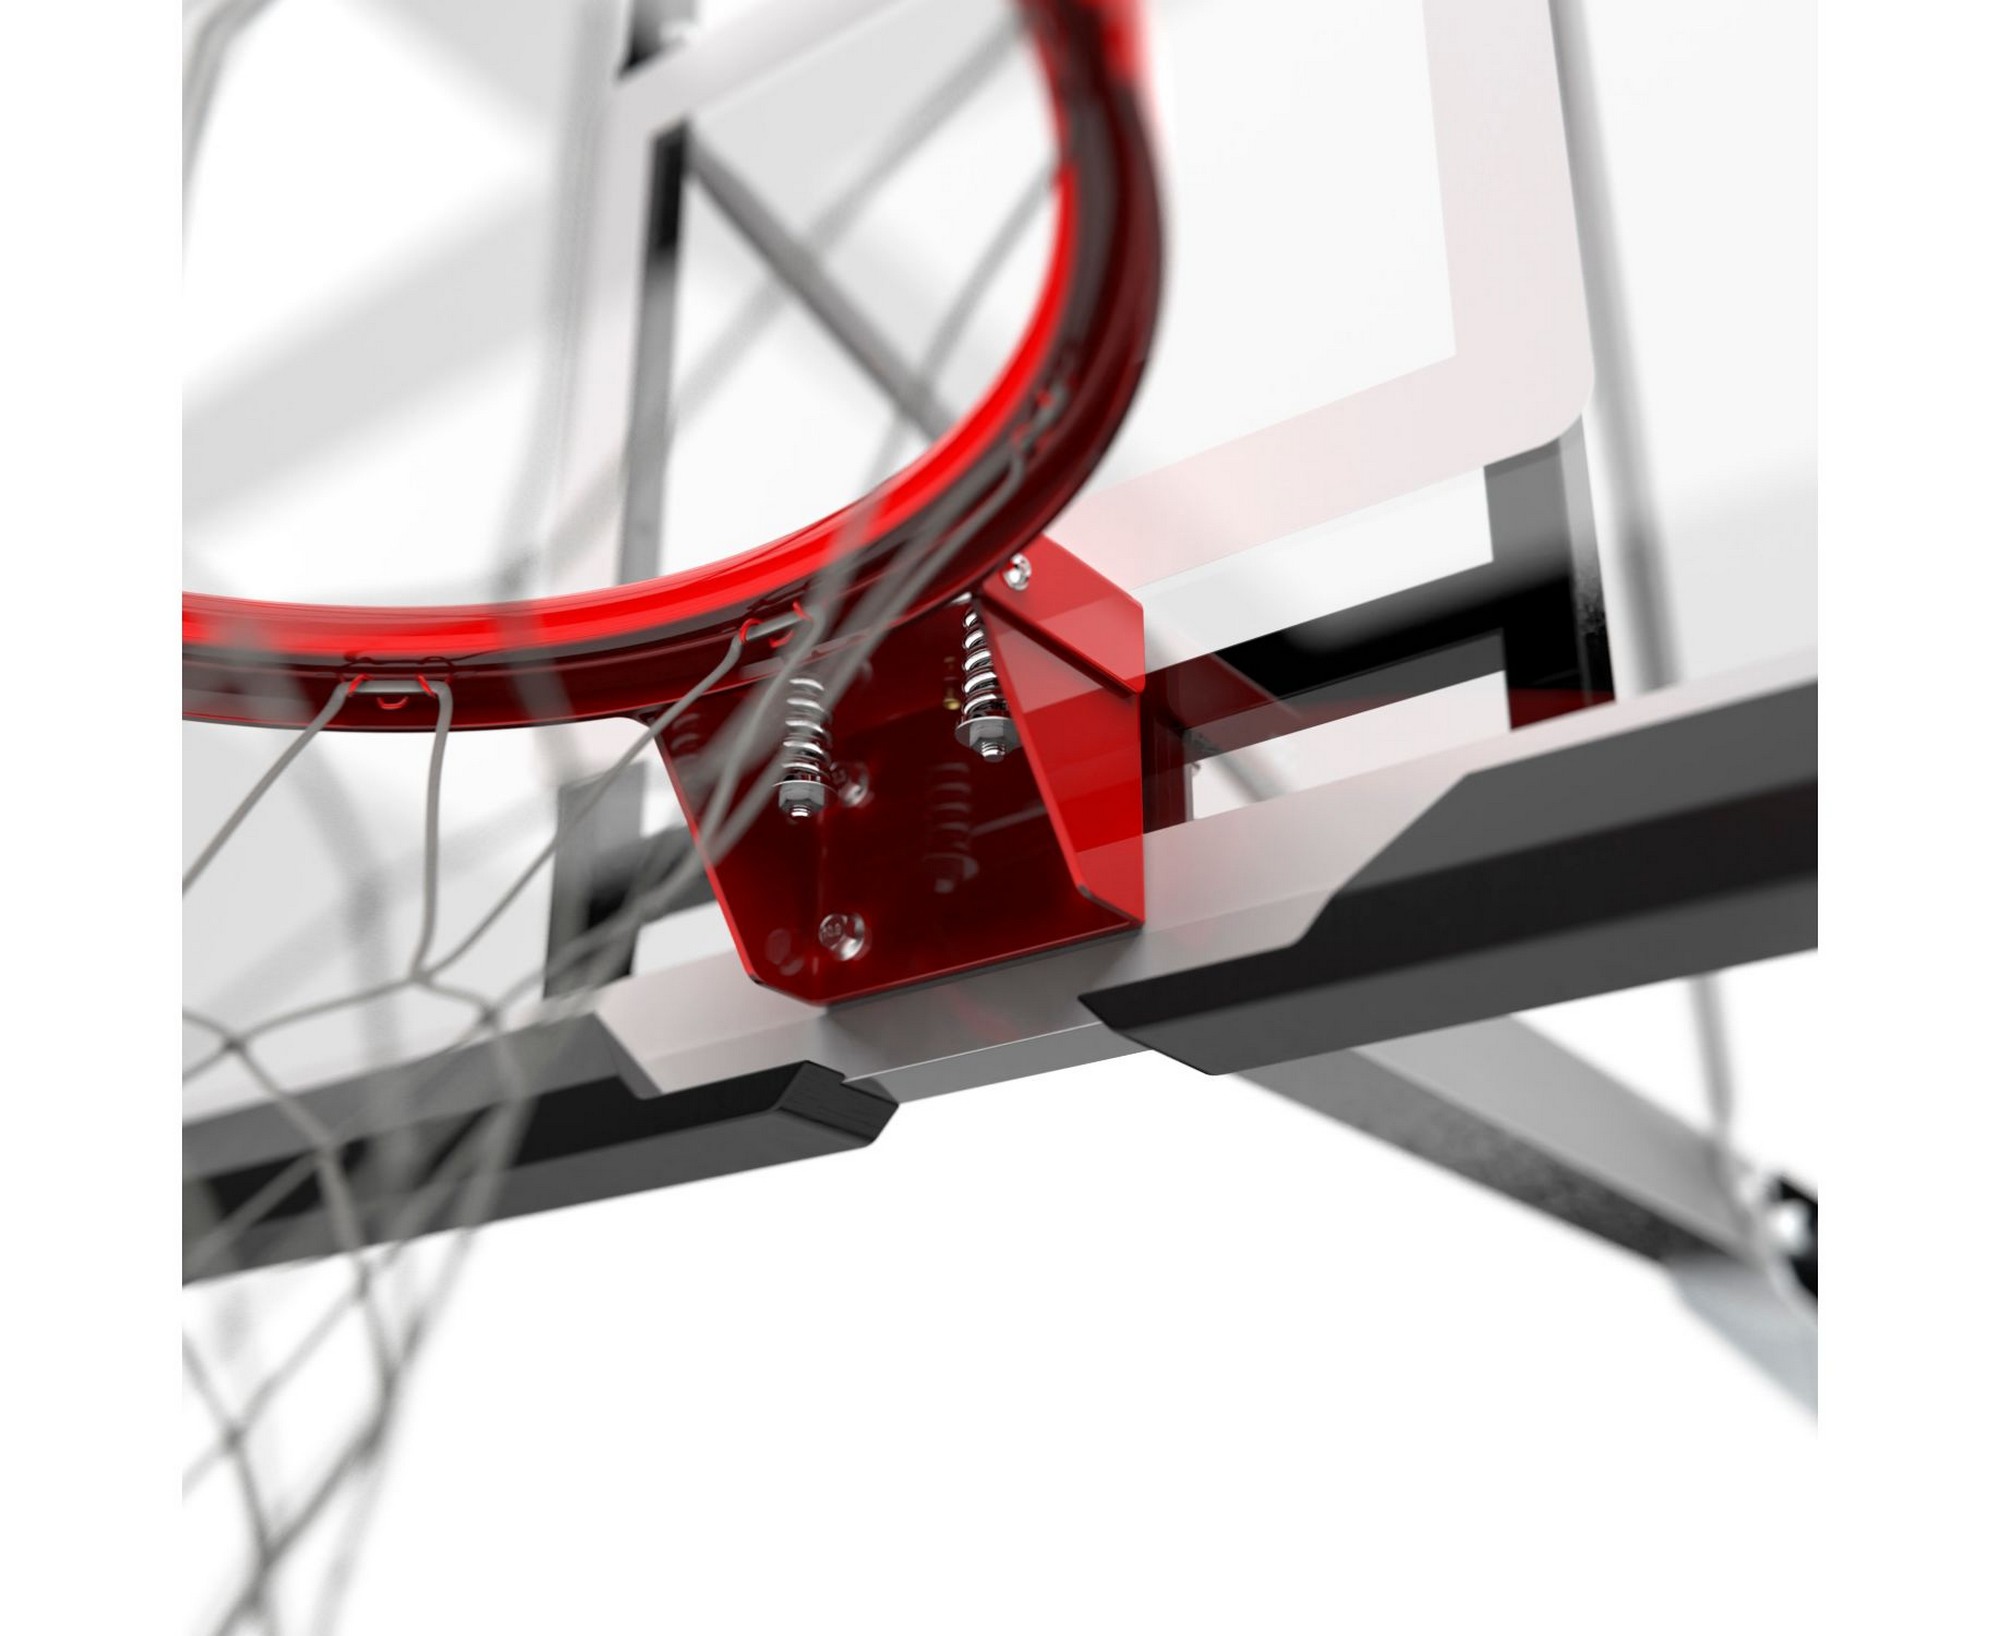 Баскетбольная мобильная стойка DFC STAND50SG 2000_1636